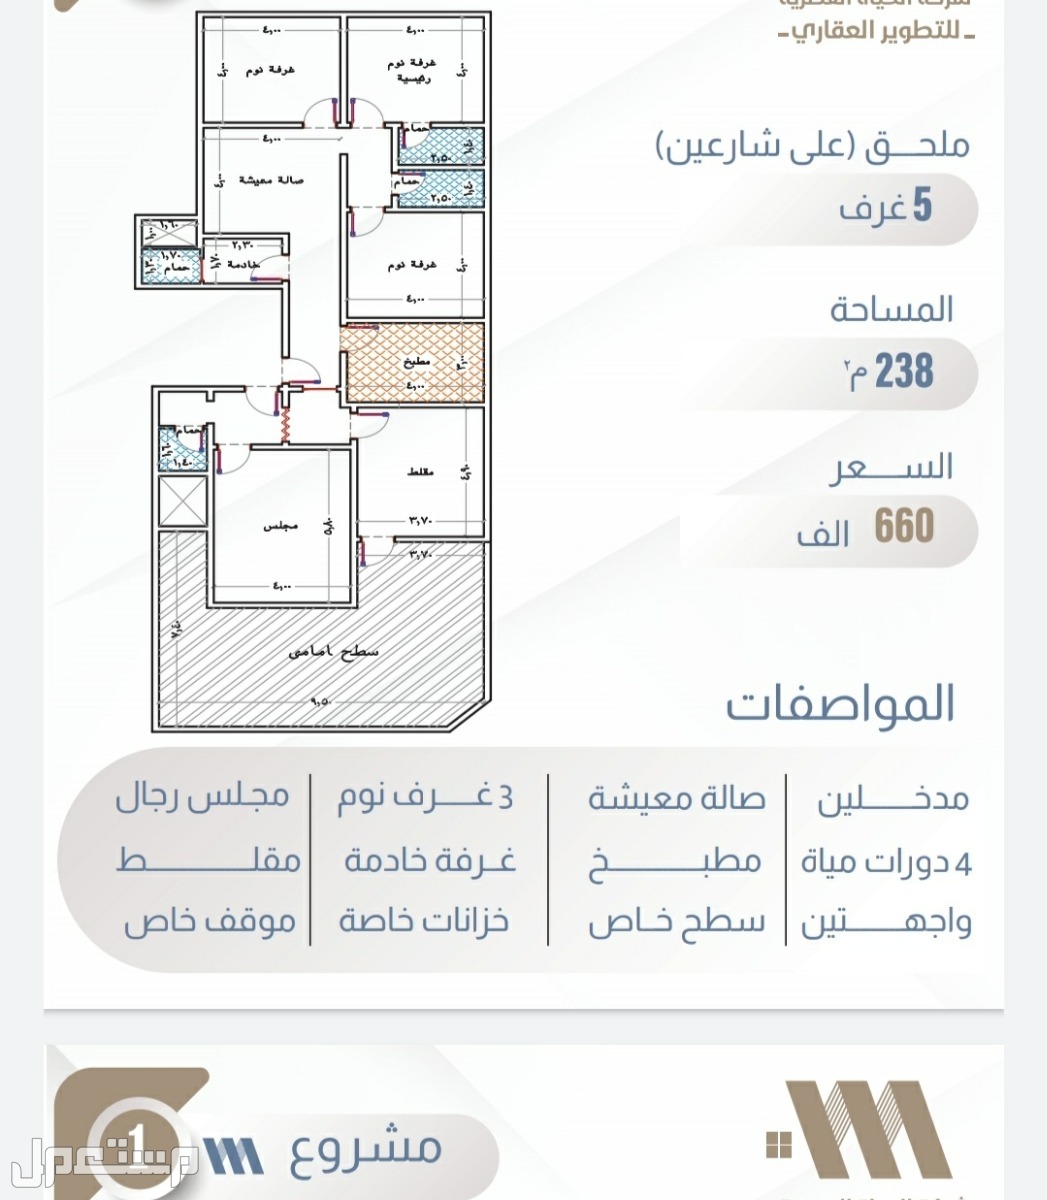 شقة للبيع في الرياض - جدة بسعر 335 ألف ريال سعودي